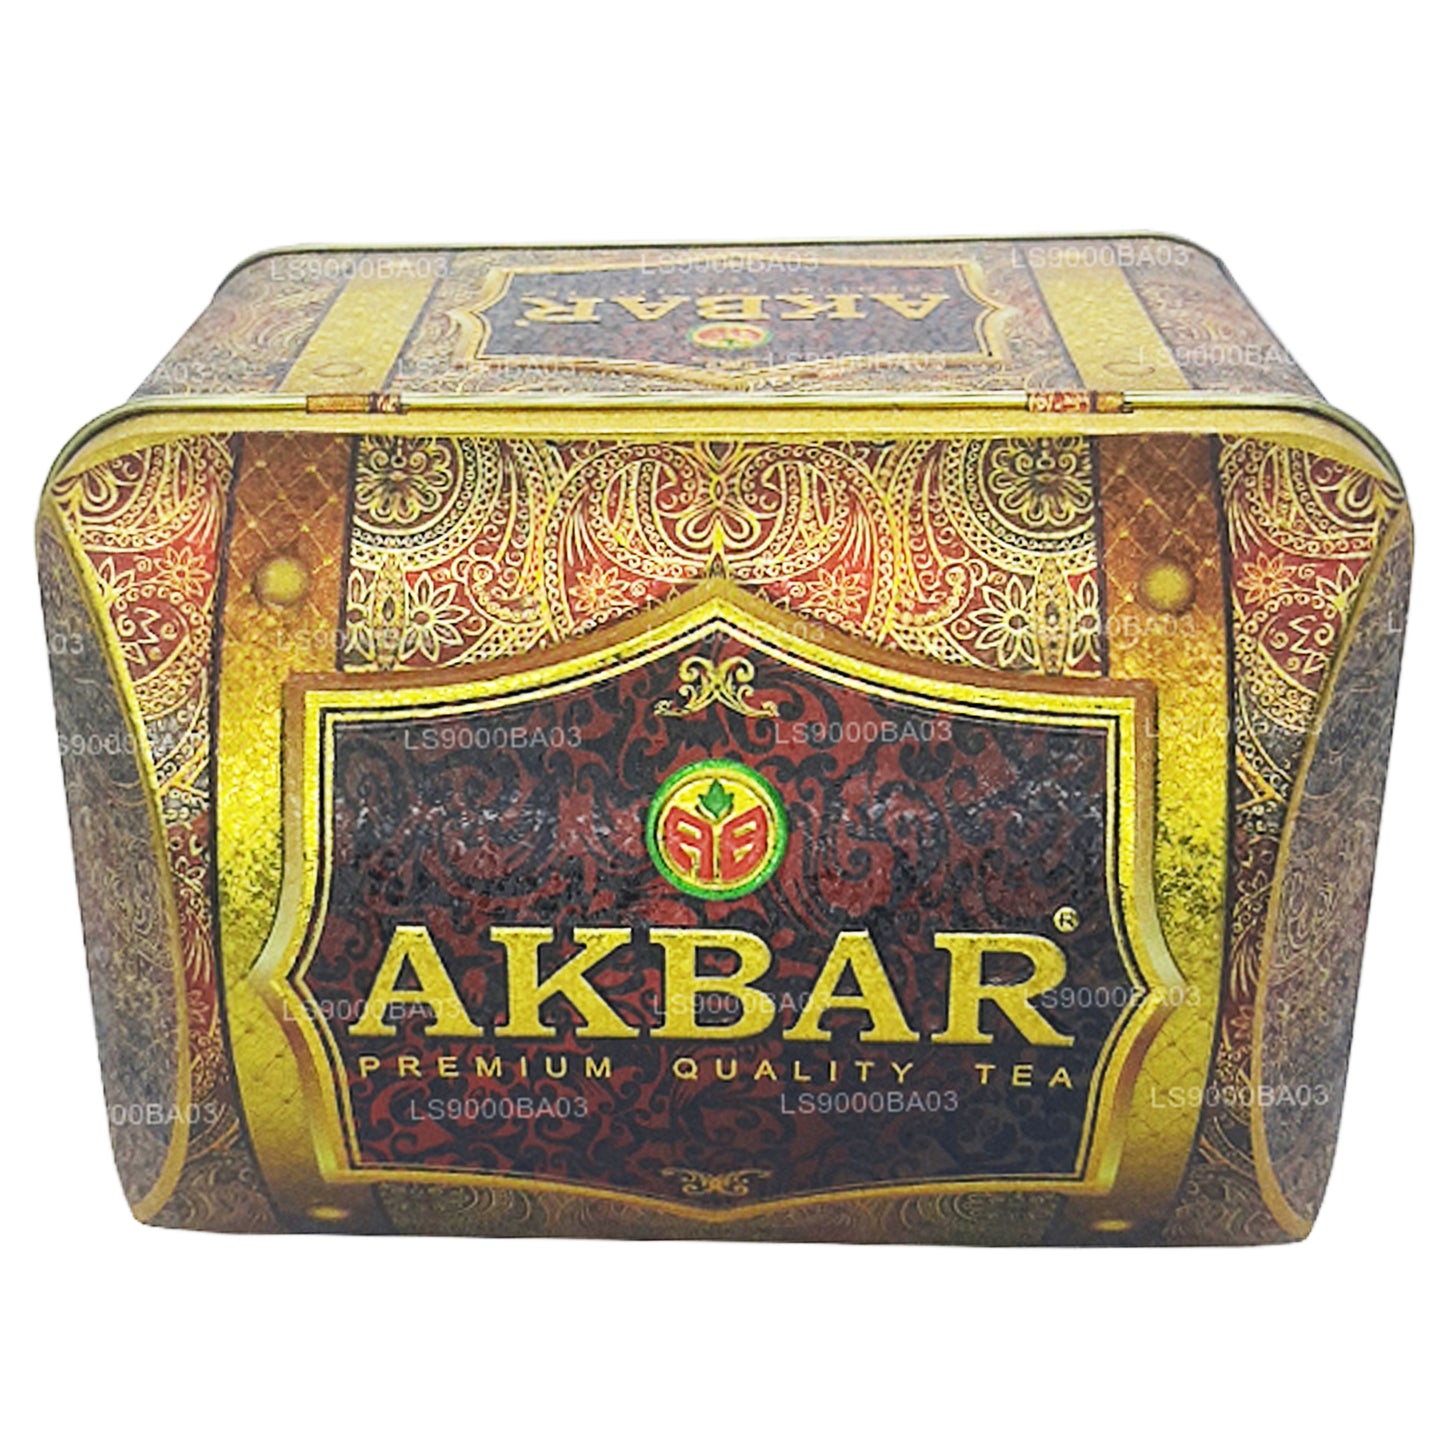 Akbar eksklusiivne kollektsioon maasika kreem aare kasti (250g)